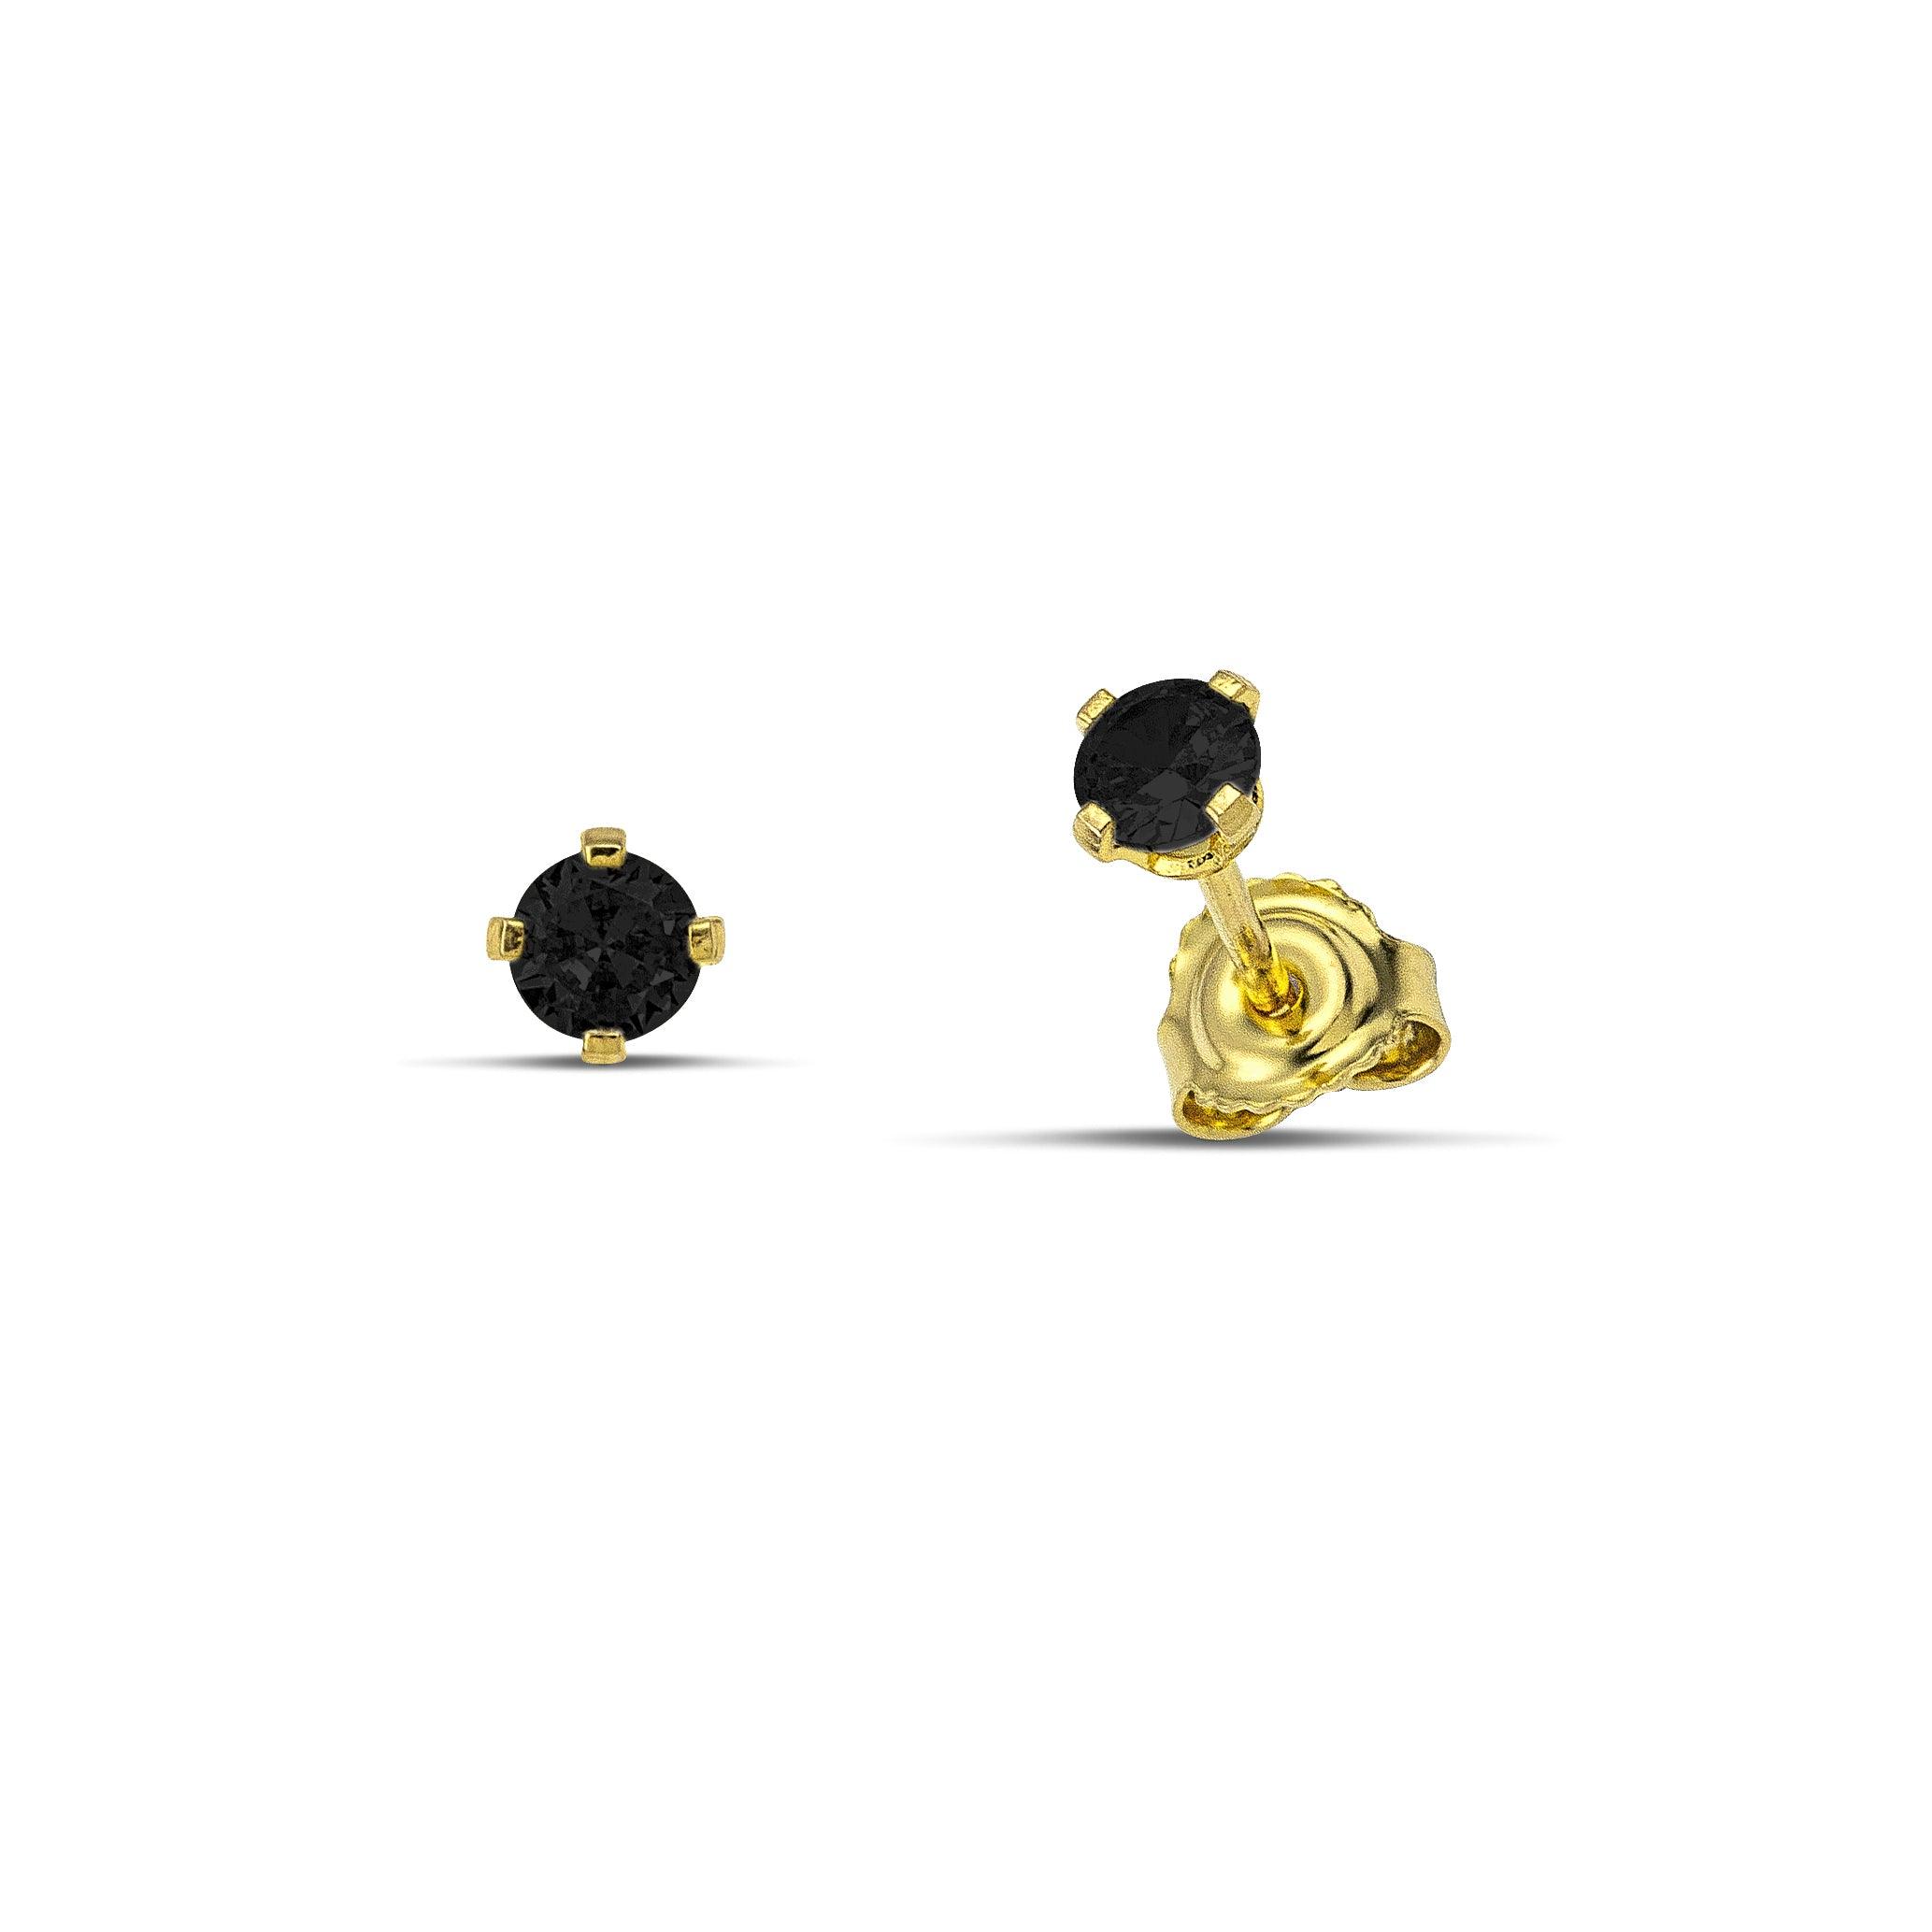 Καρφωτά σκουλαρίκια μονόπετρα από κίτρινο χρυσό 14 καρατίων με ζιργκόν μαύρου χρώματος.